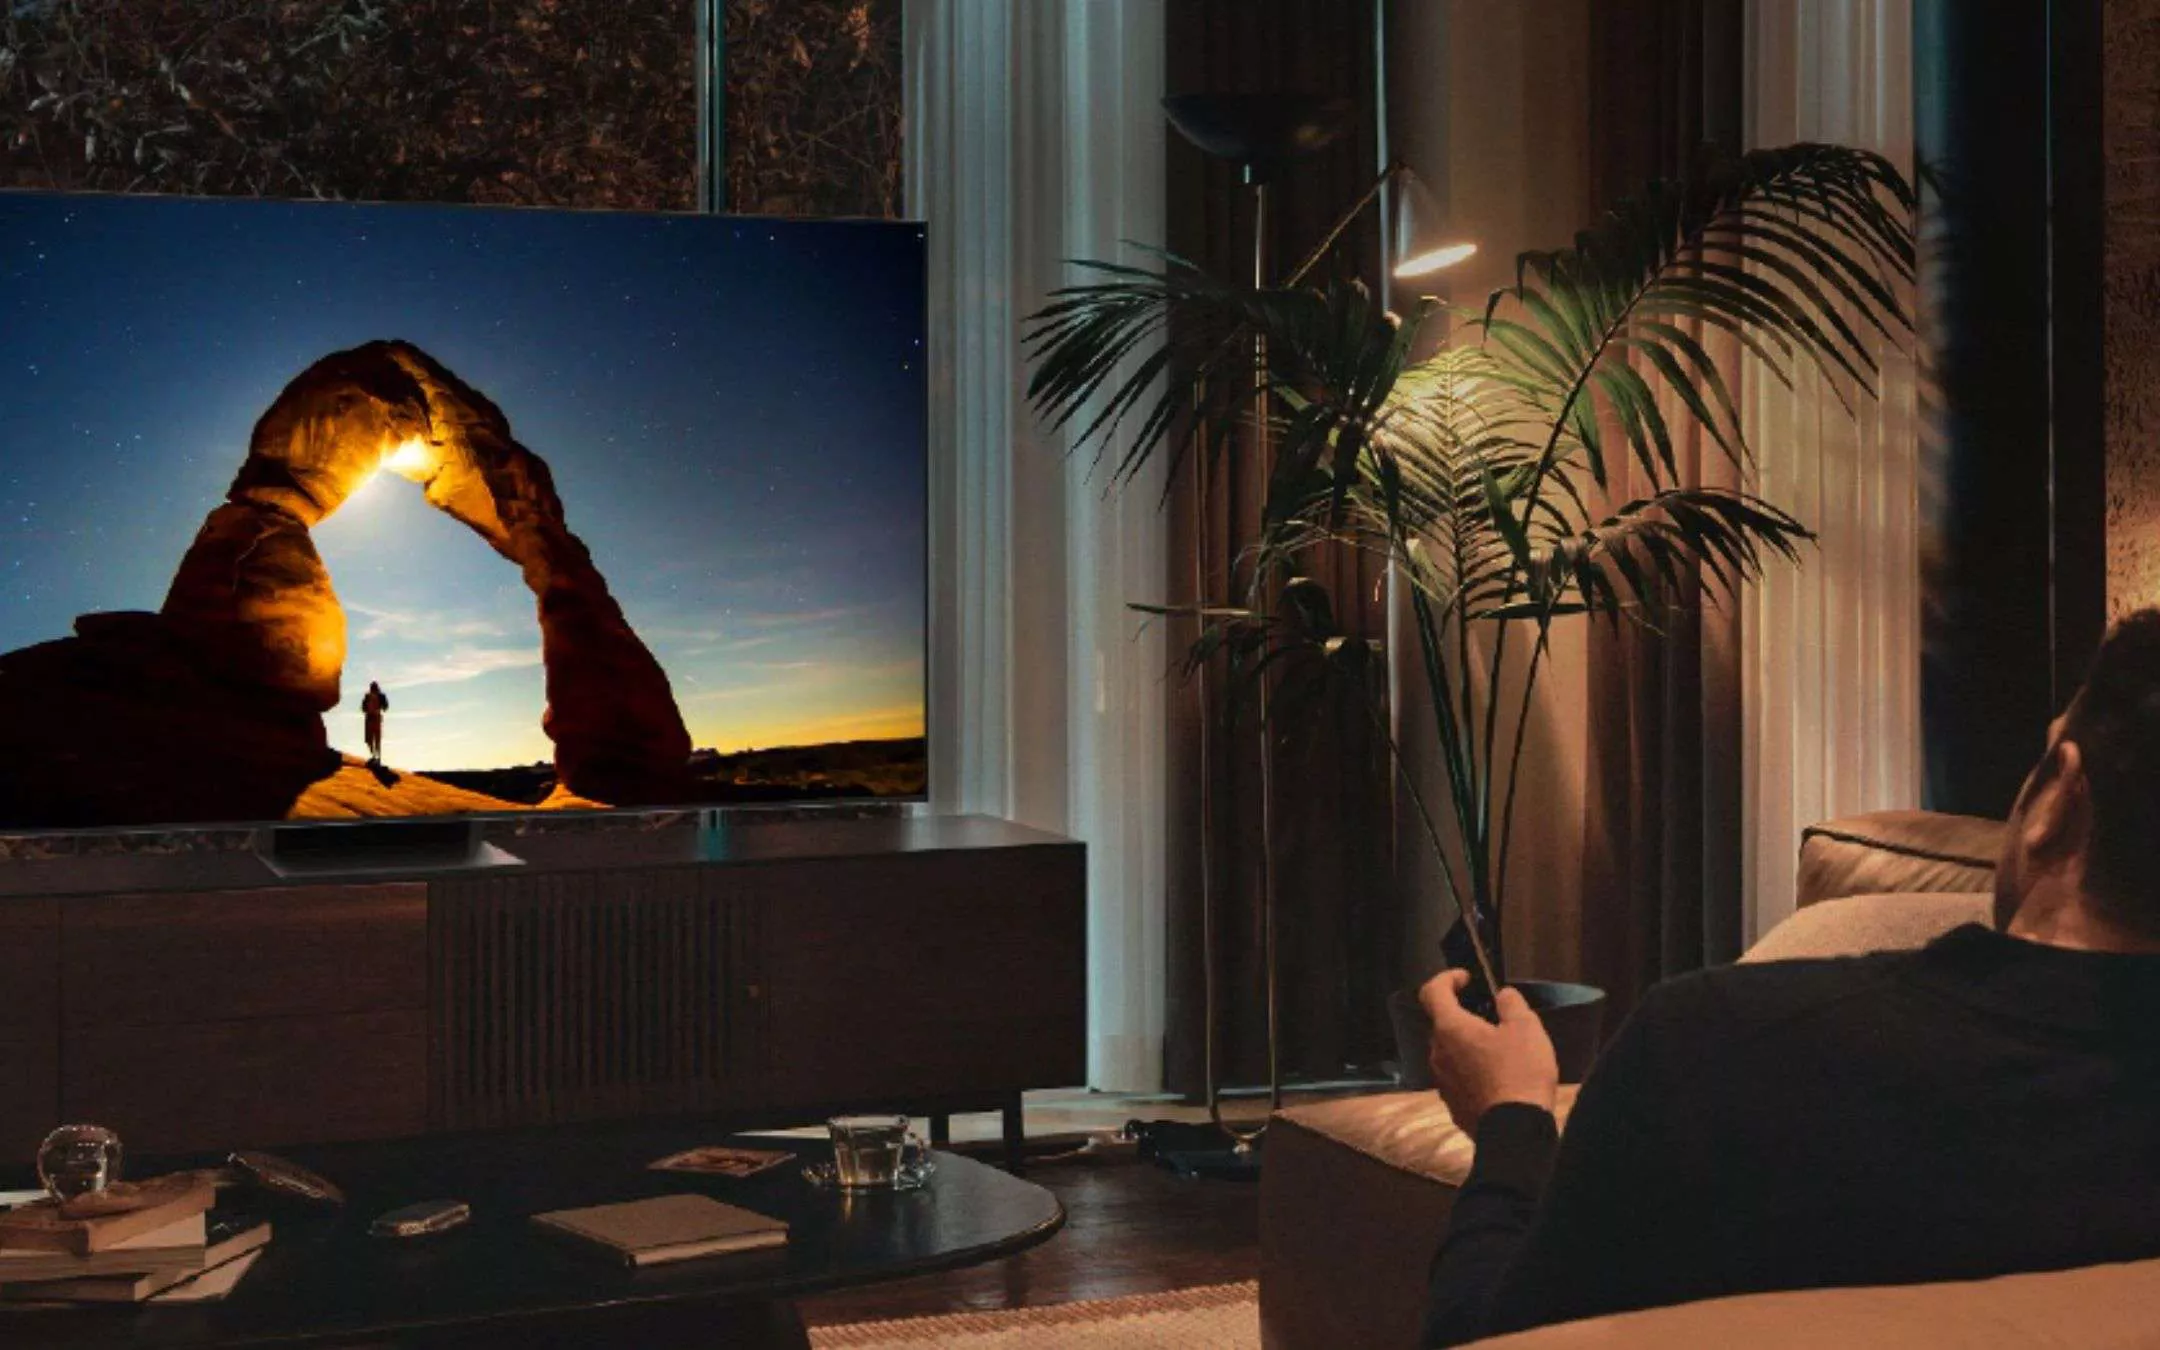 Ebay Svende La Smart Tv Samsung Uhd 4k Hdr Da 55 Sconto Di 1000€ 4328